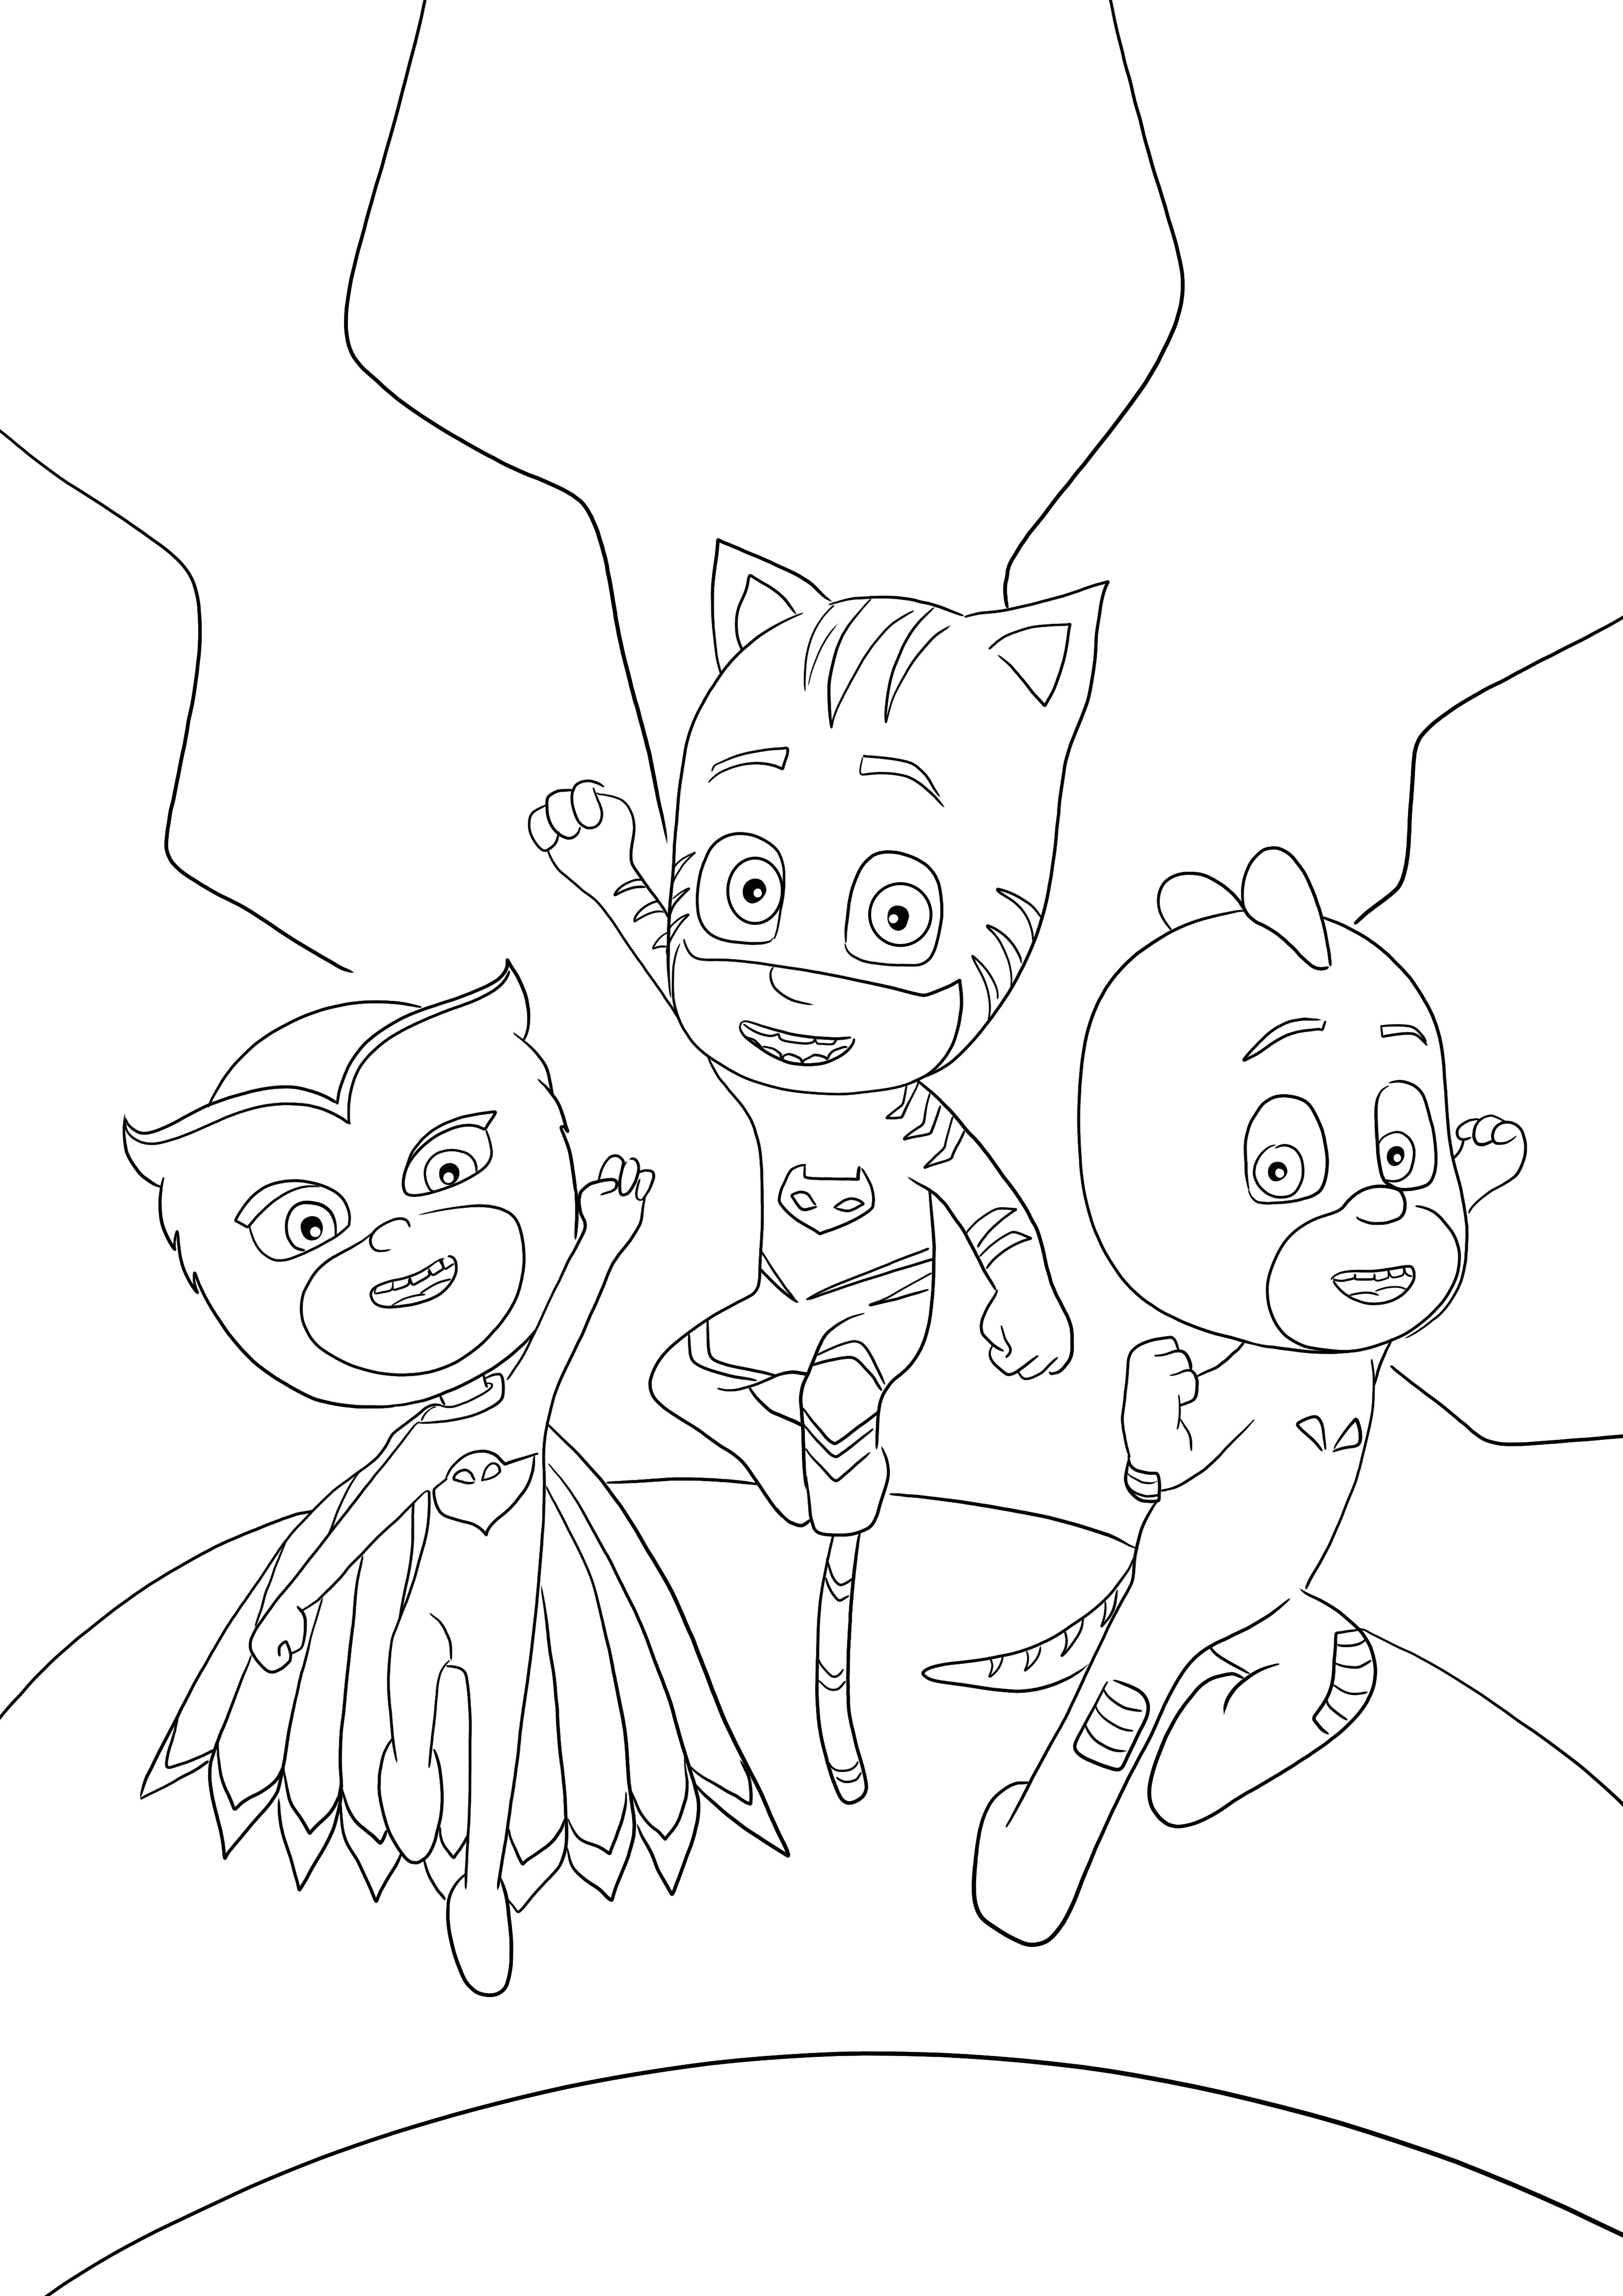 PJ Masks salvando outro dia colorindo e imprimindo de graça para crianças